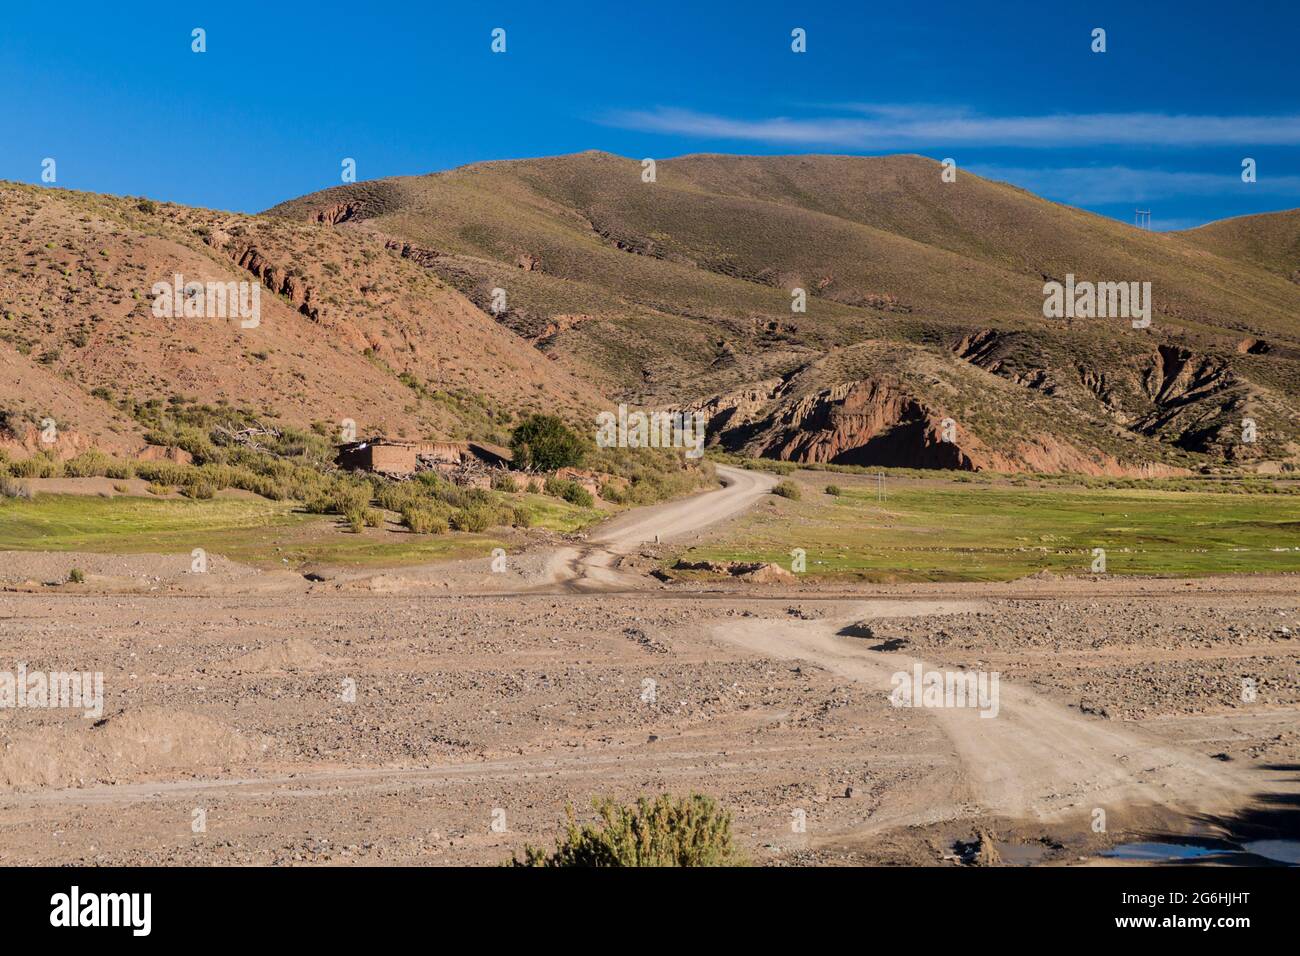 Small village Nazarenito on bolivian Altiplano near Tupiza Stock Photo